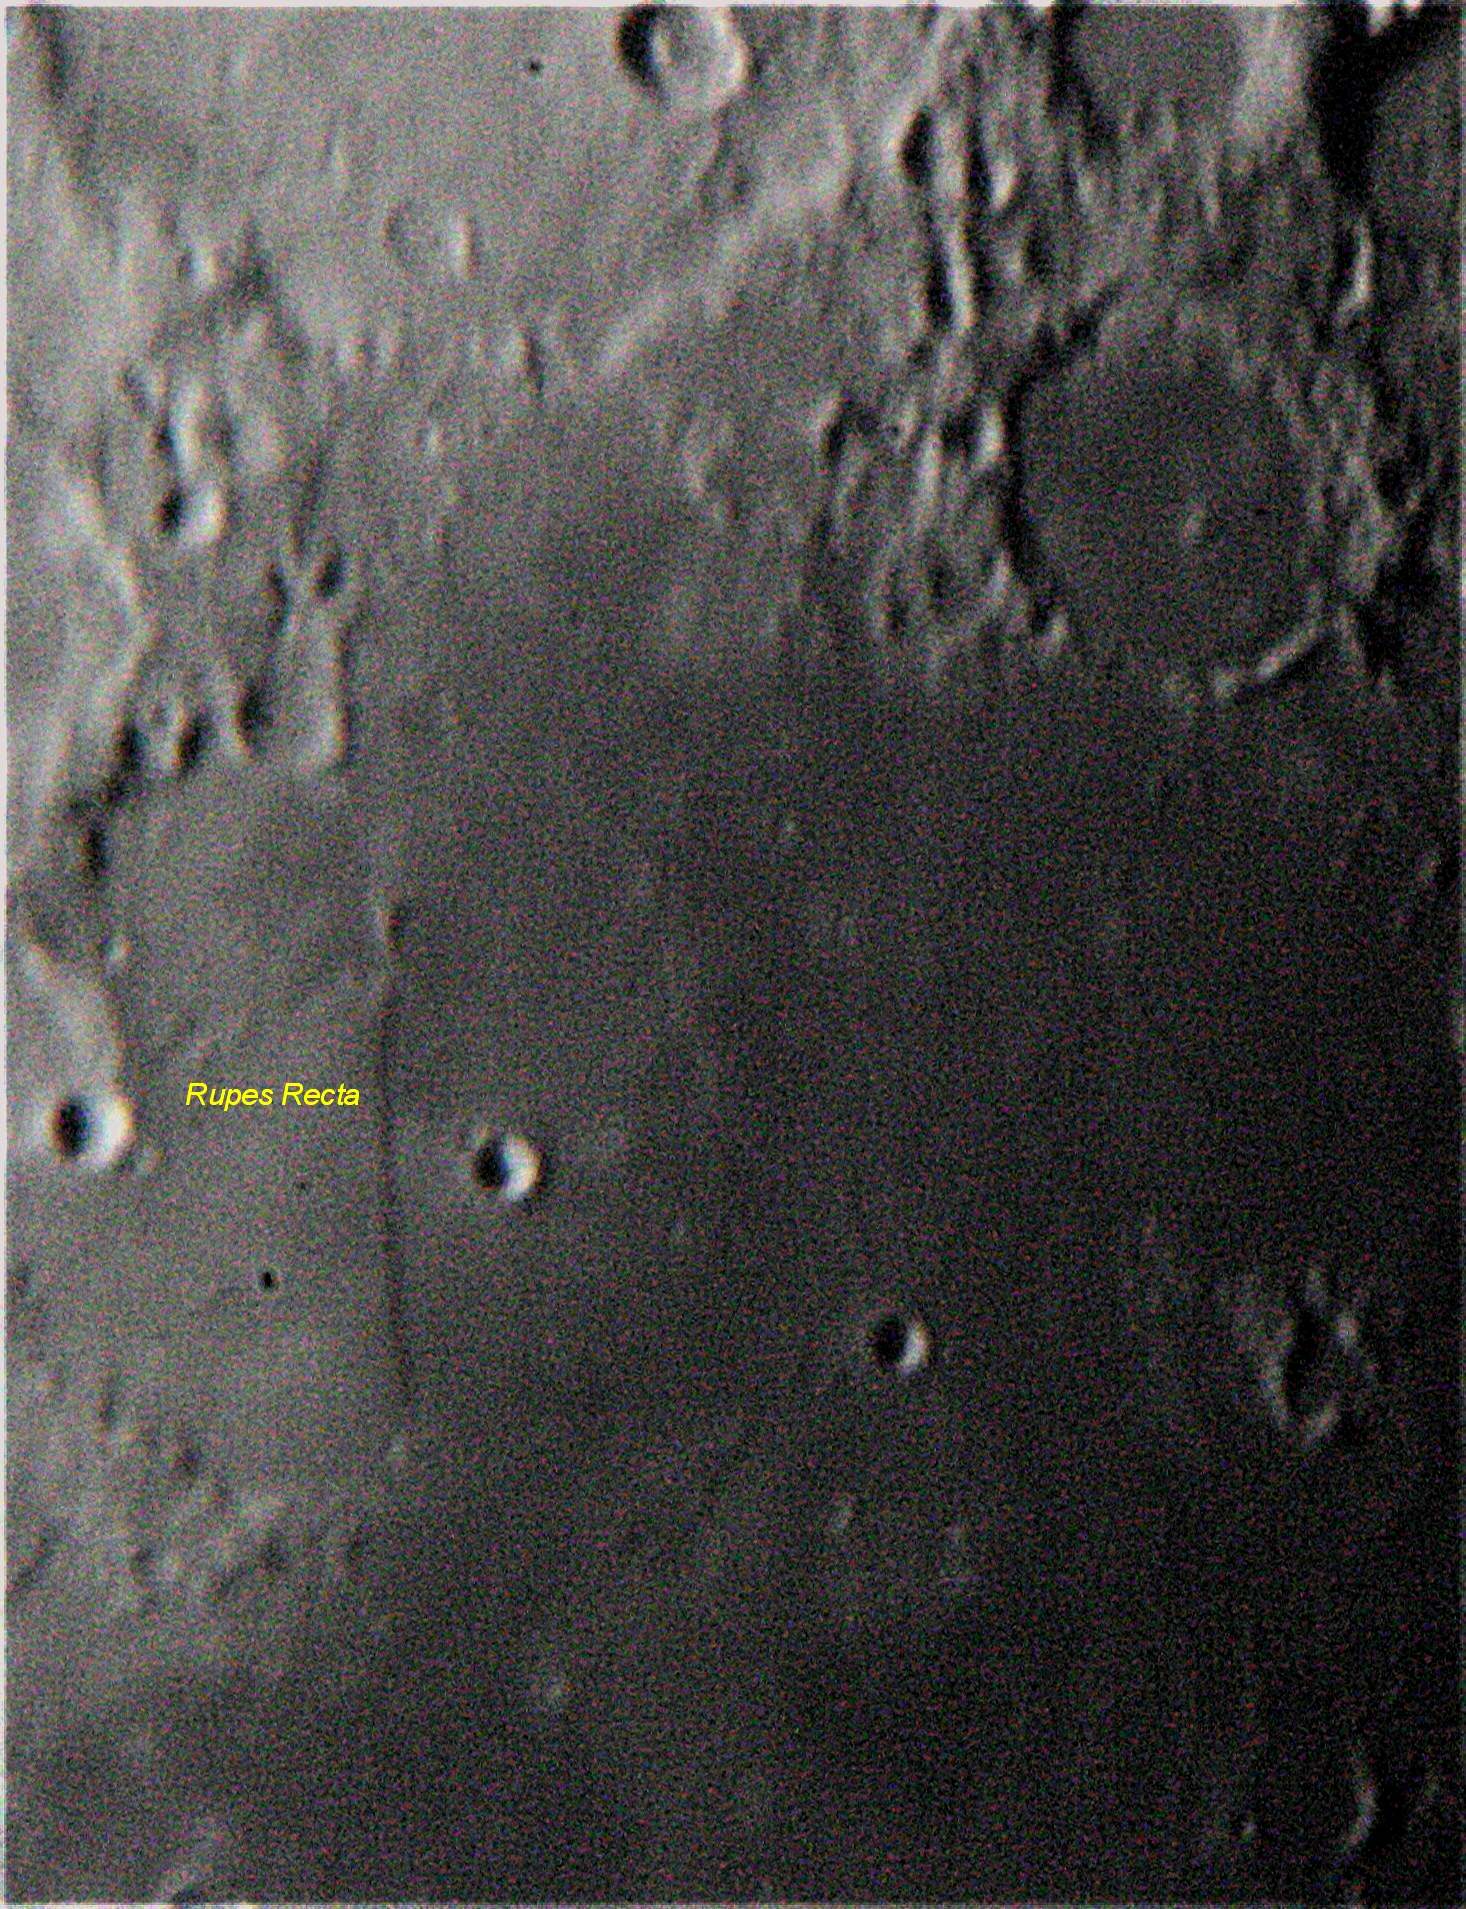 Měsíc detail, březen 2013 zkouška přes Dobson 300mm.